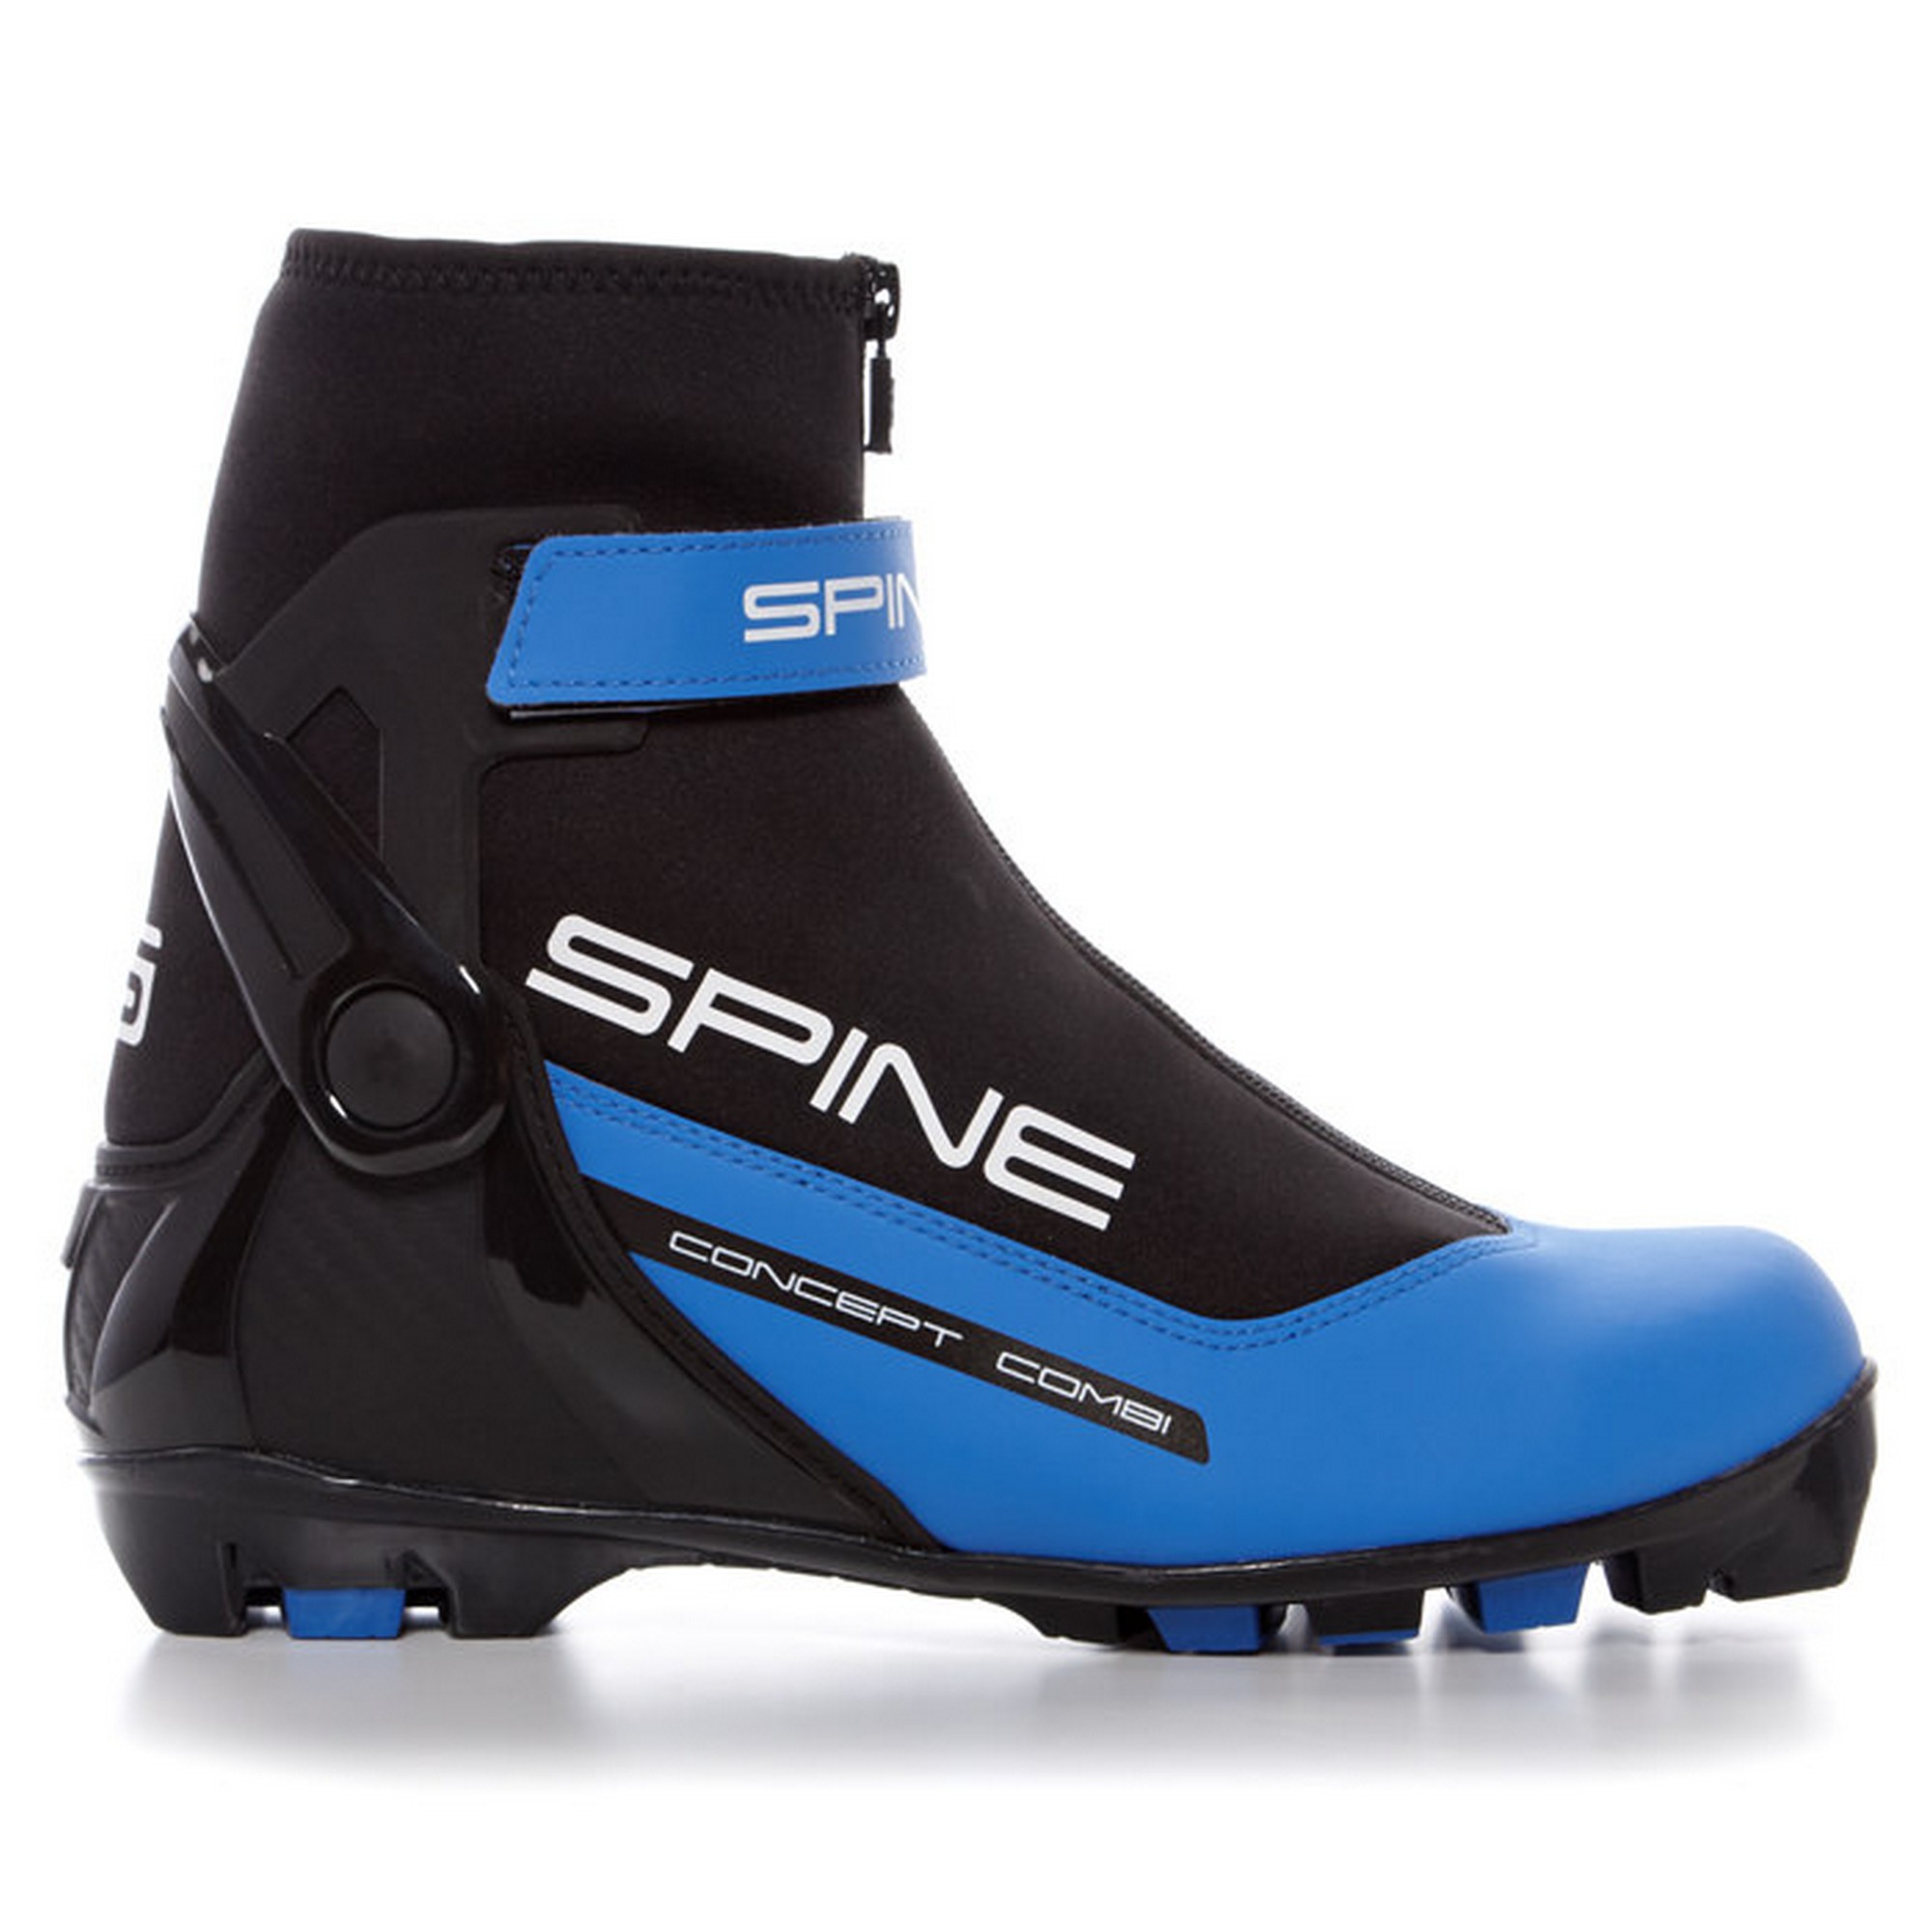 Ботинки спайн купить. Лыжные ботинки Spine NNN Комби. Лыжные ботинки Spine NNN Concept Combi. Ботинки Spine Concept Combi 268. Ботинки лыжные SNS Spine Pilot Matrix Carbon Pro 194k.